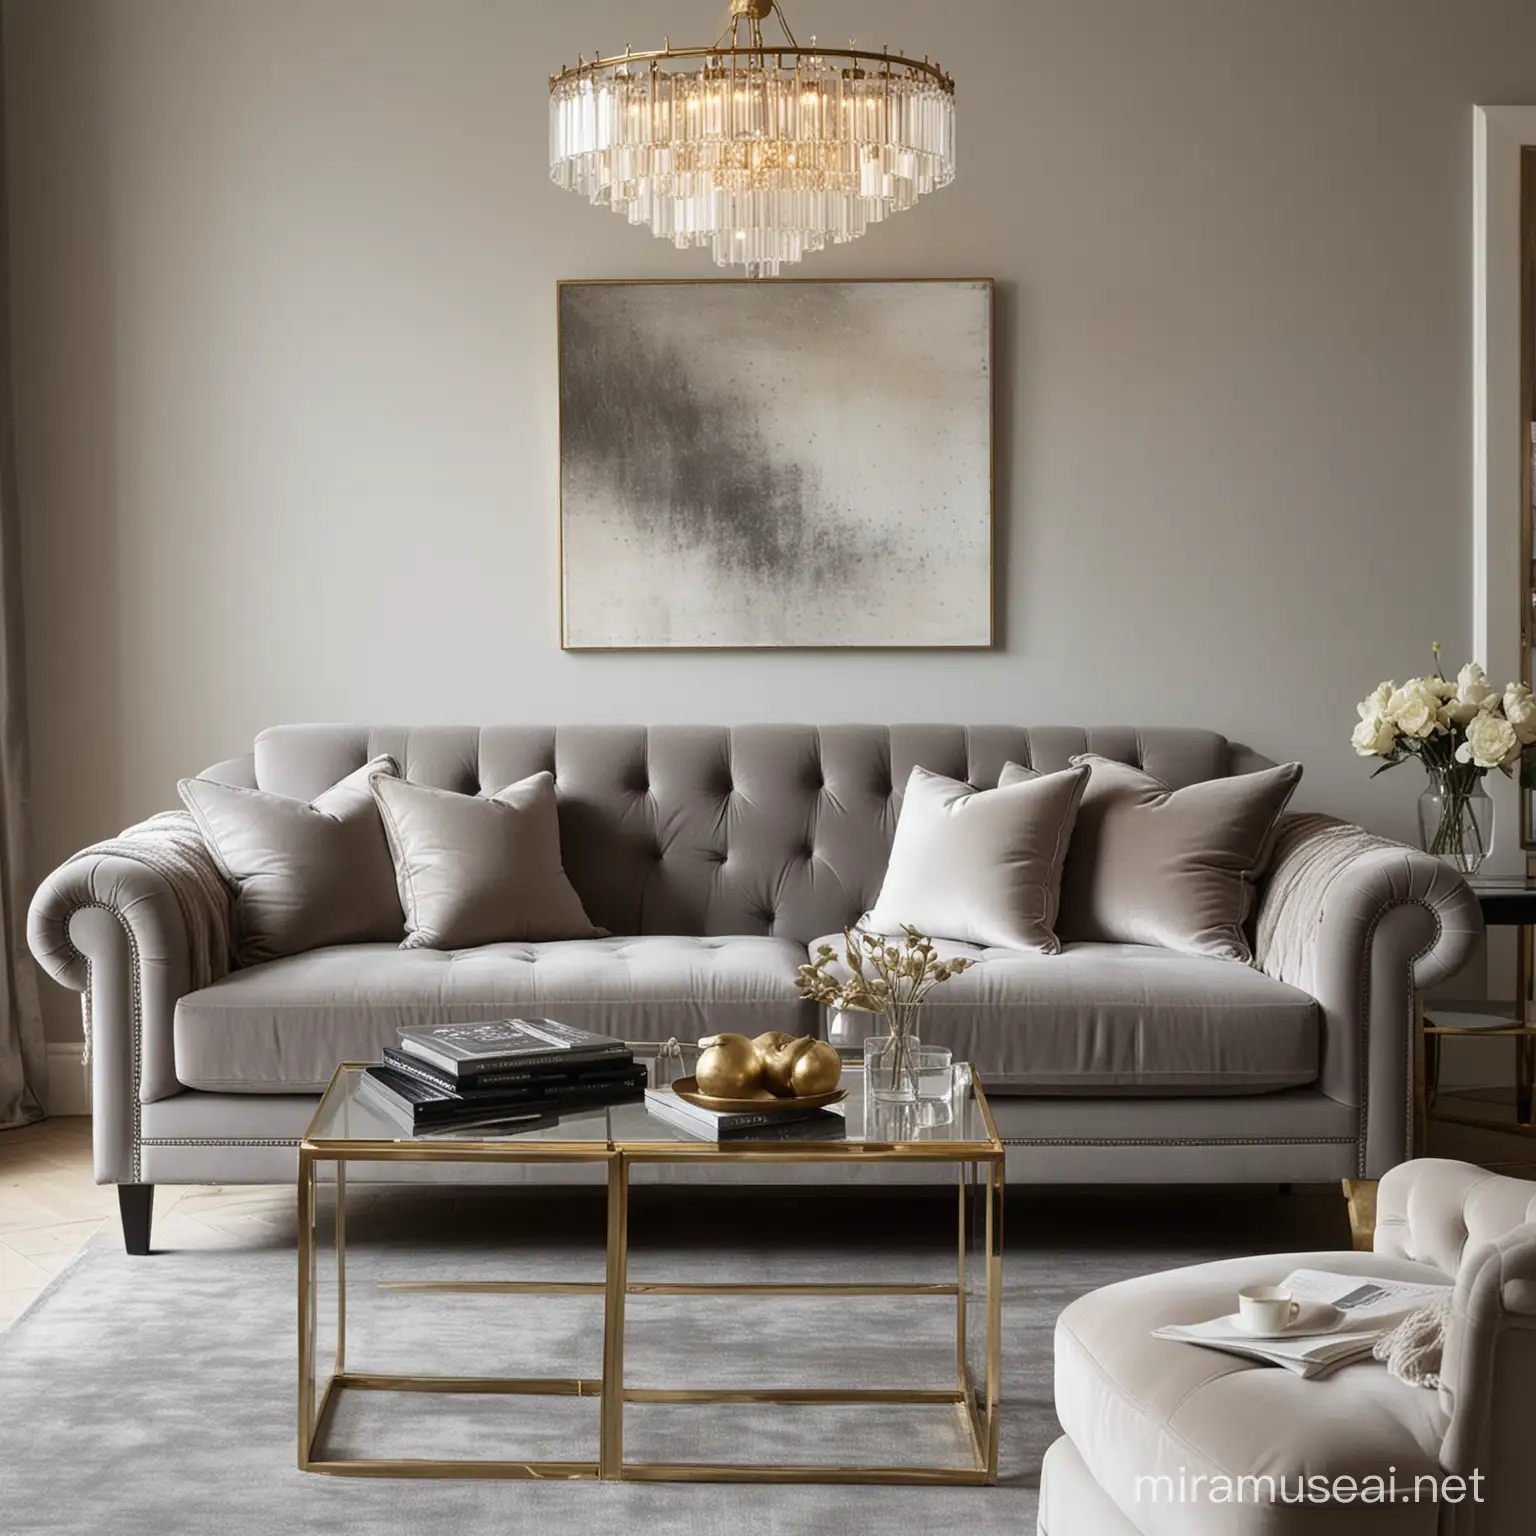 modern, elegant, amazing glass brass lamps, velvet grey sofa, grey, taupe, off white living room